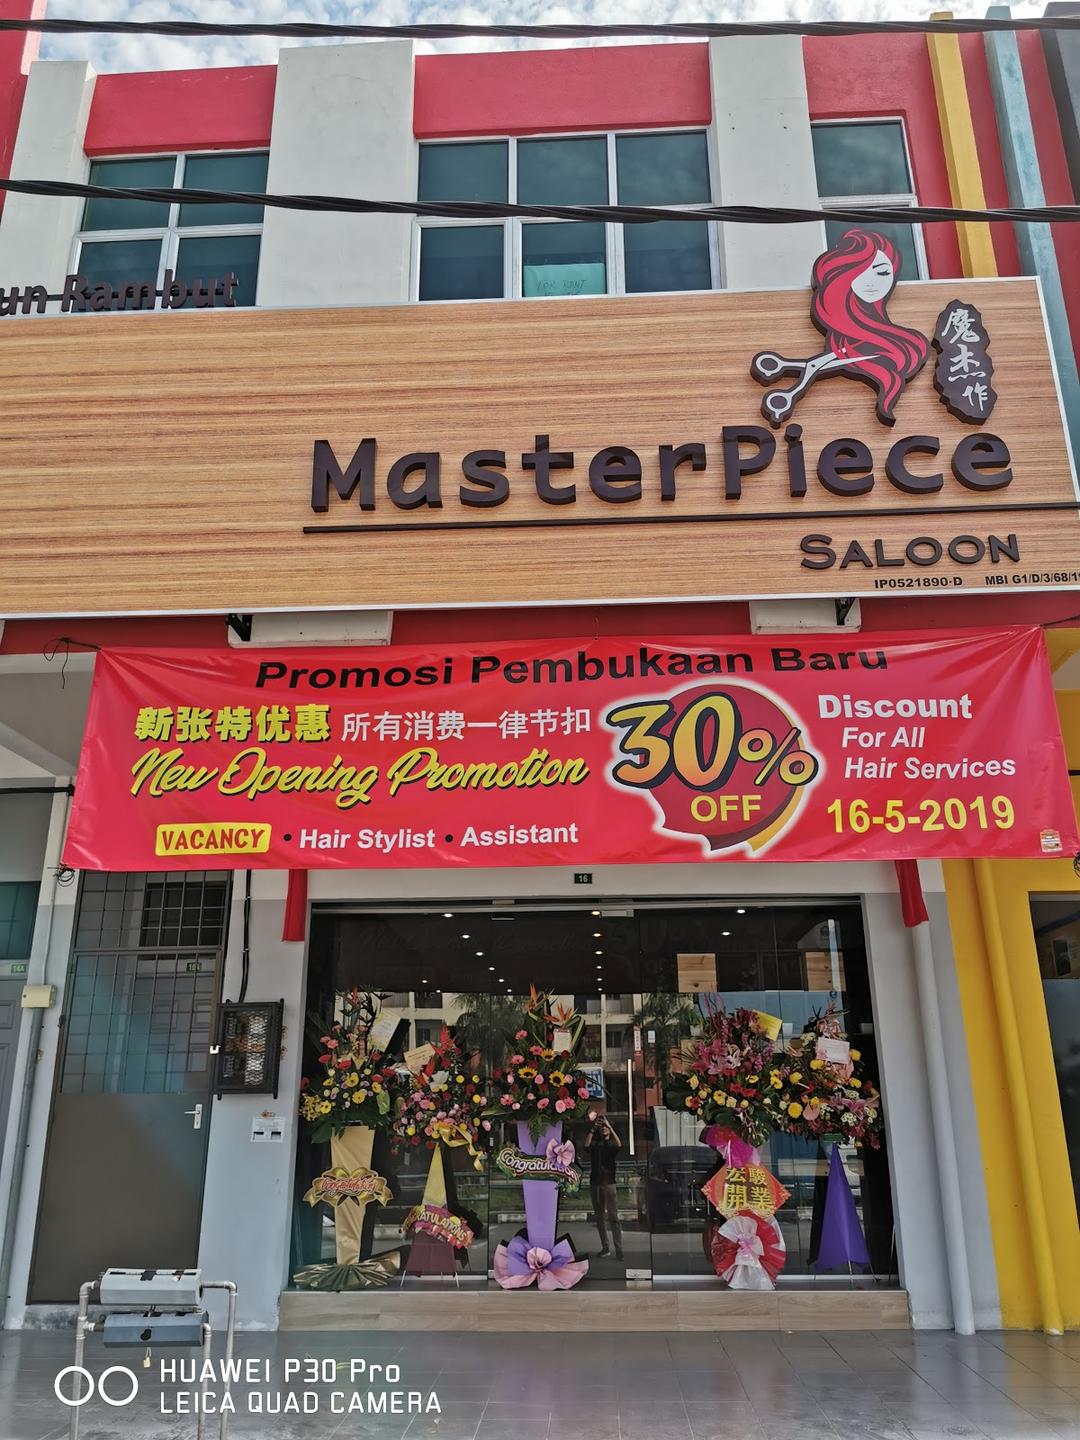 Photo of Masterpiece Saloon - Kota Kinabalu, Sabah, Malaysia